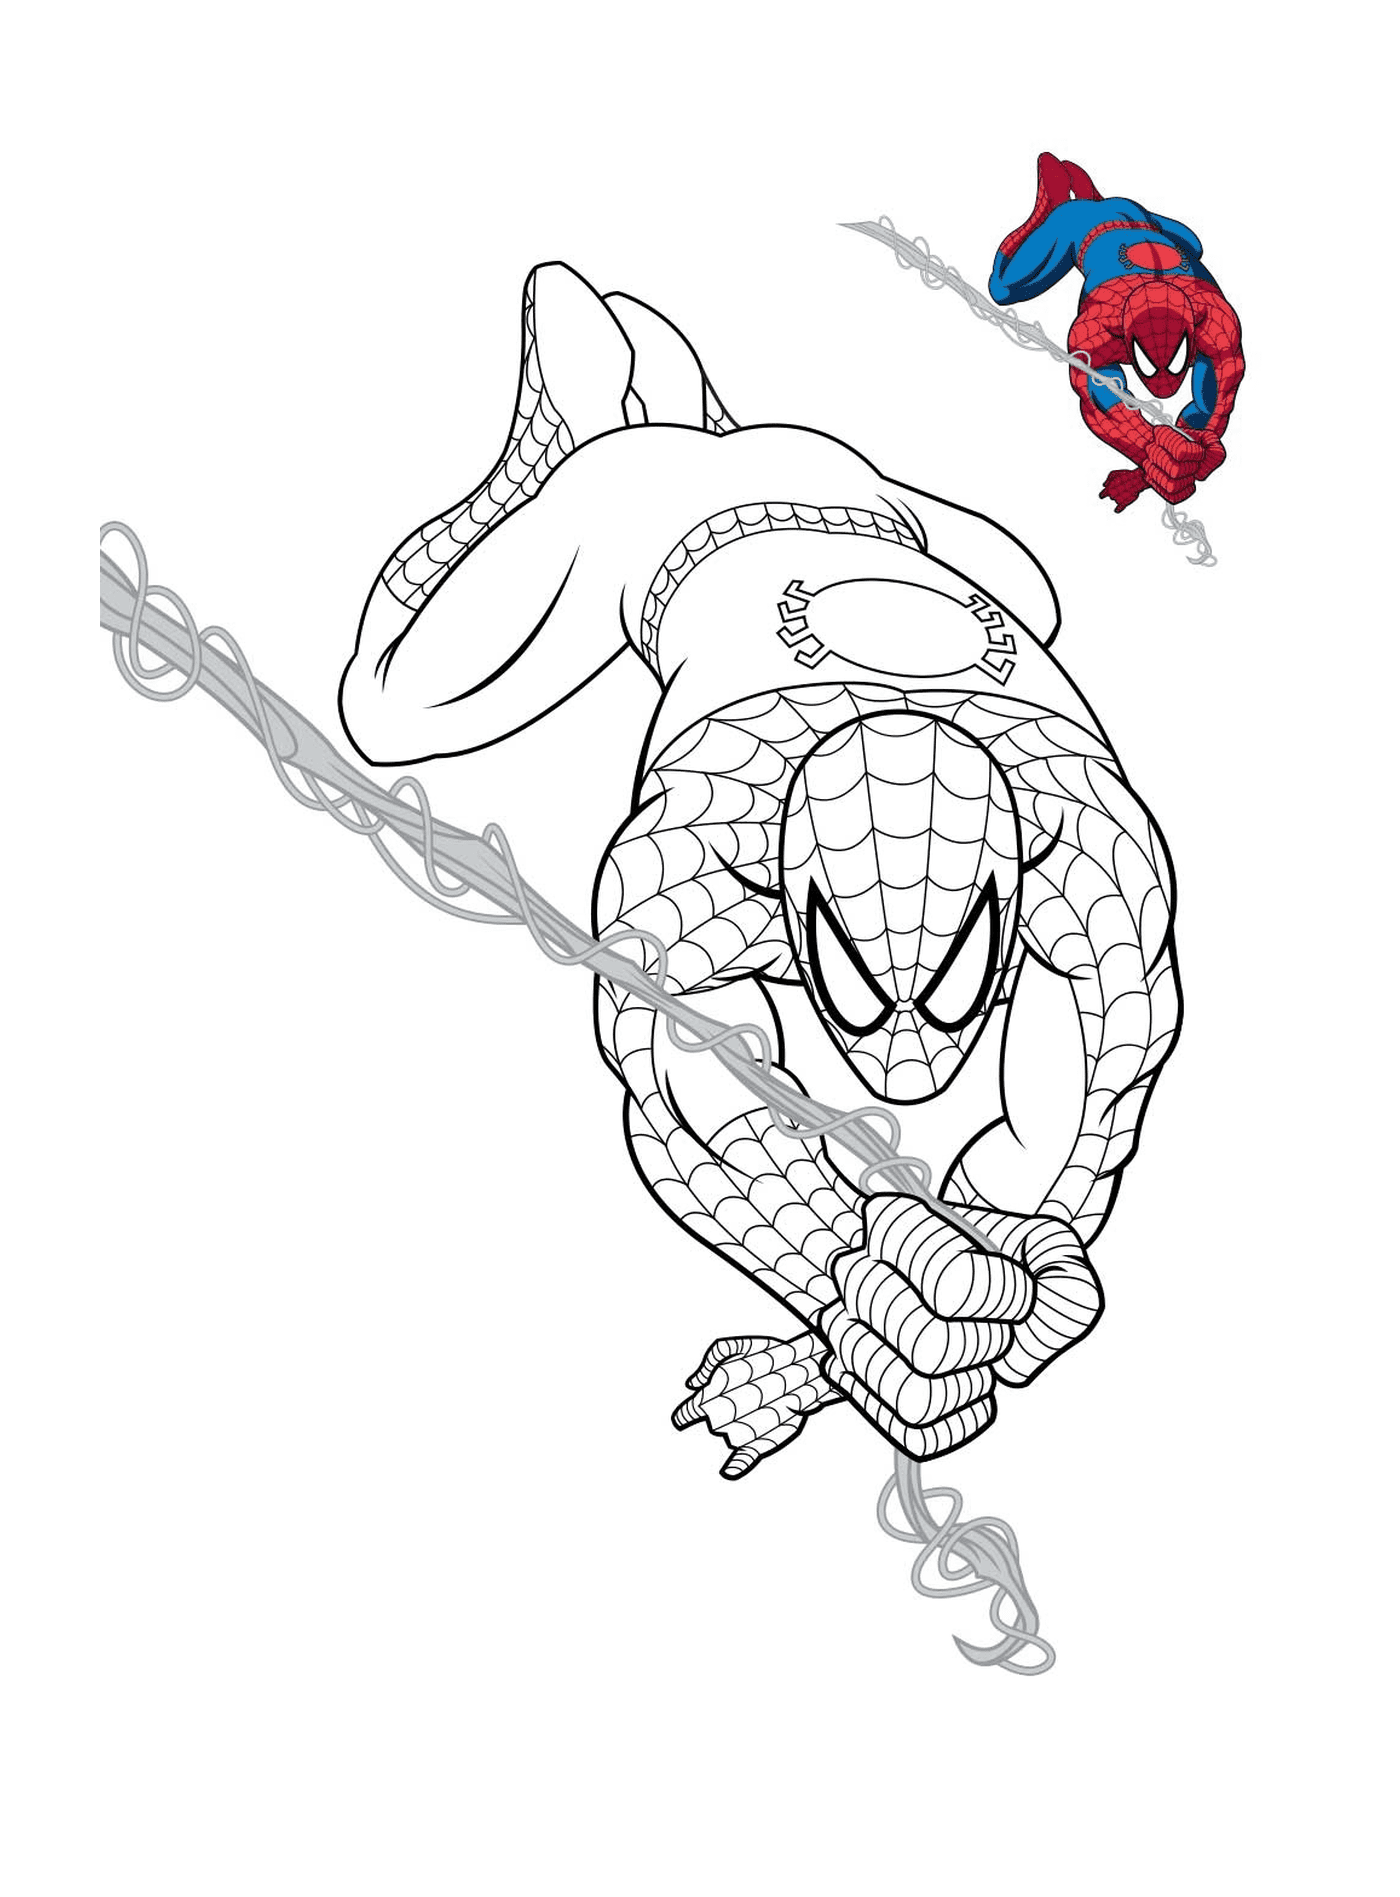  Spiderman hängt an einem Seil 